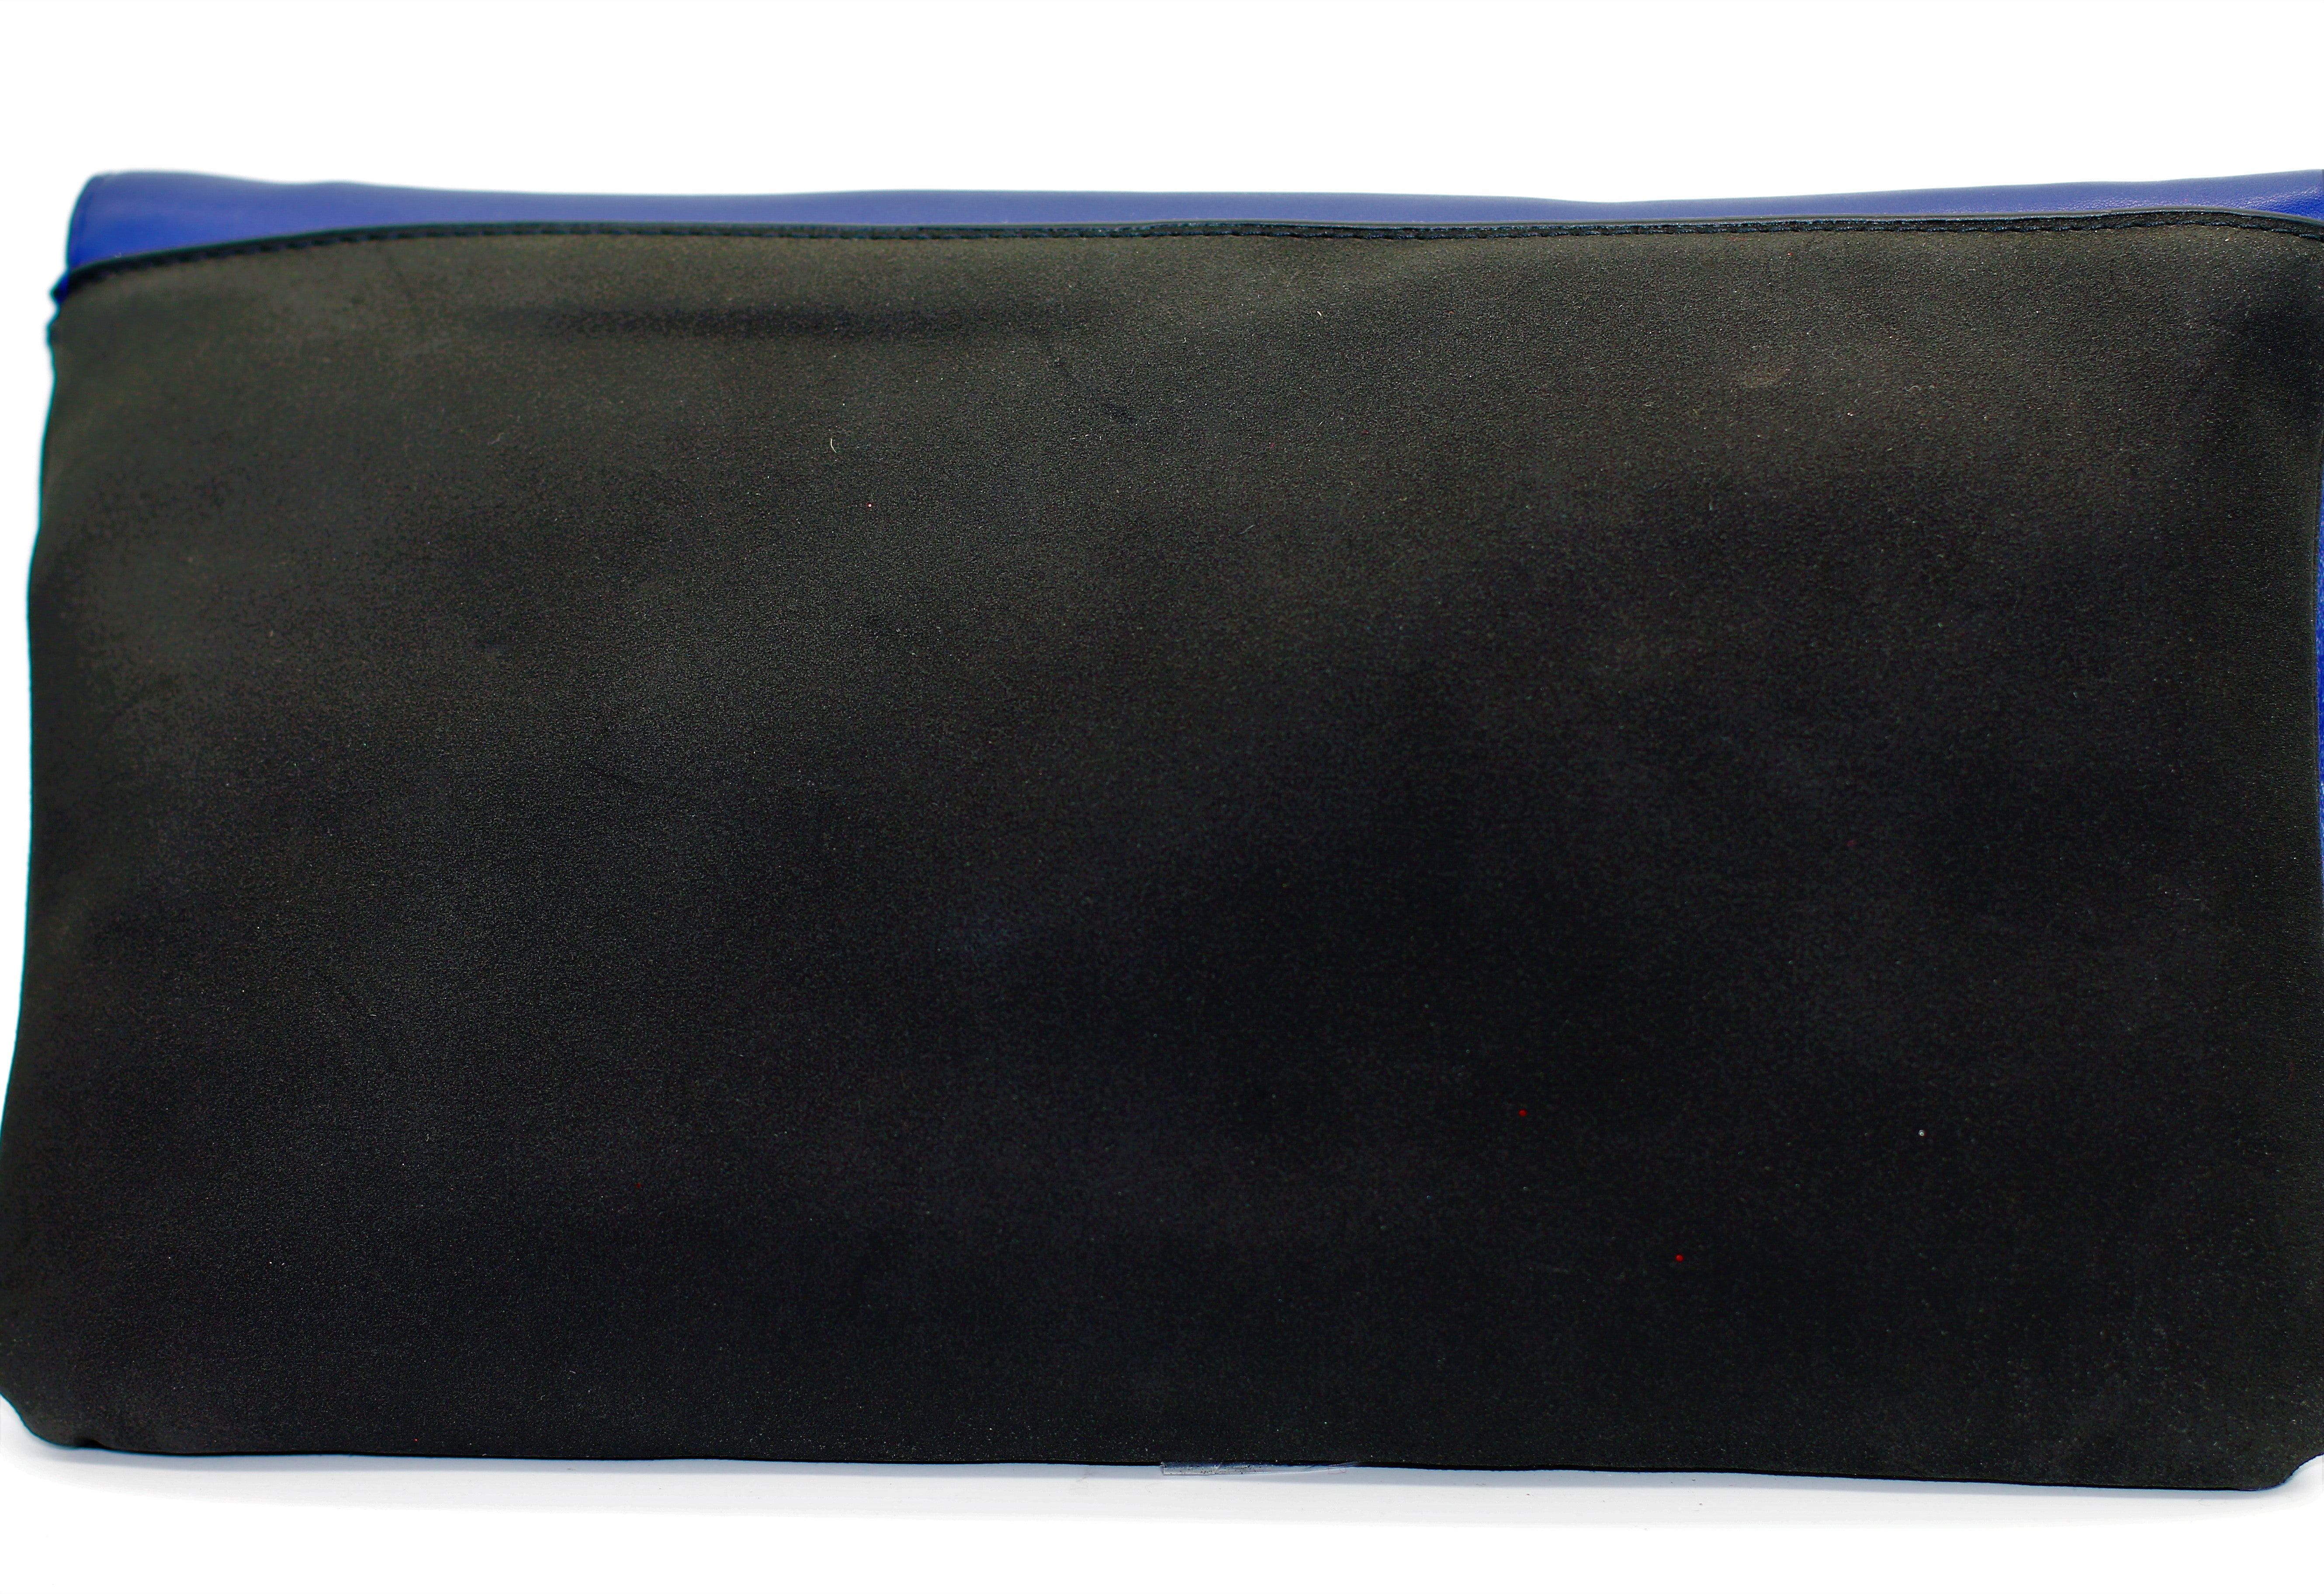 Blue-Black Clutch purse